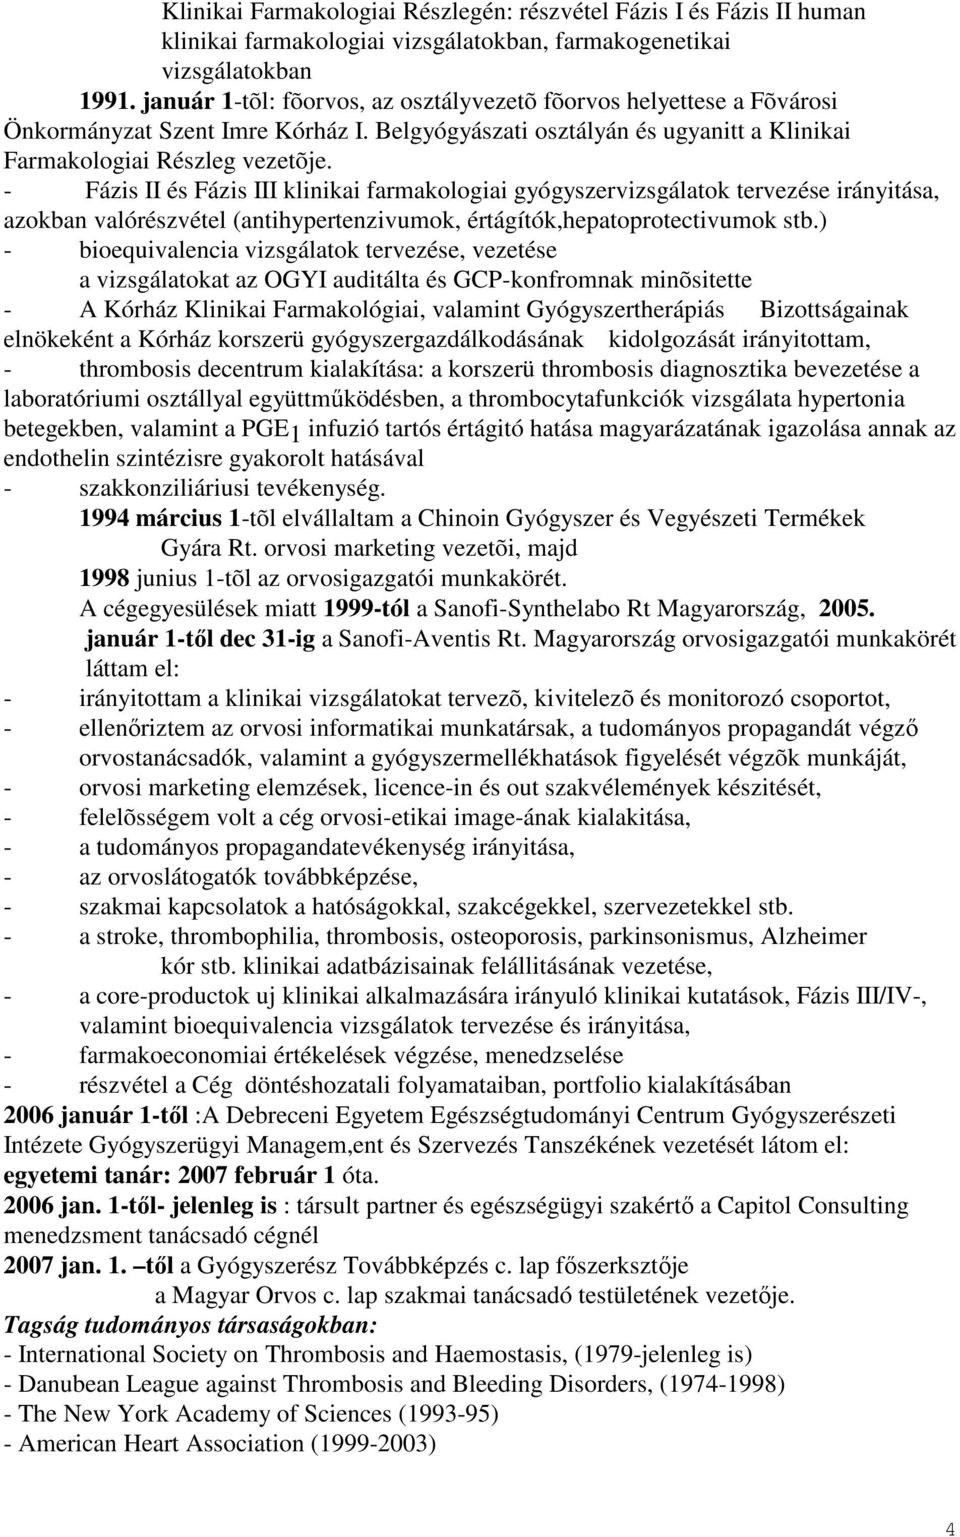 Szakmai önéletrajz. Dr. Blaskó György - PDF Ingyenes letöltés